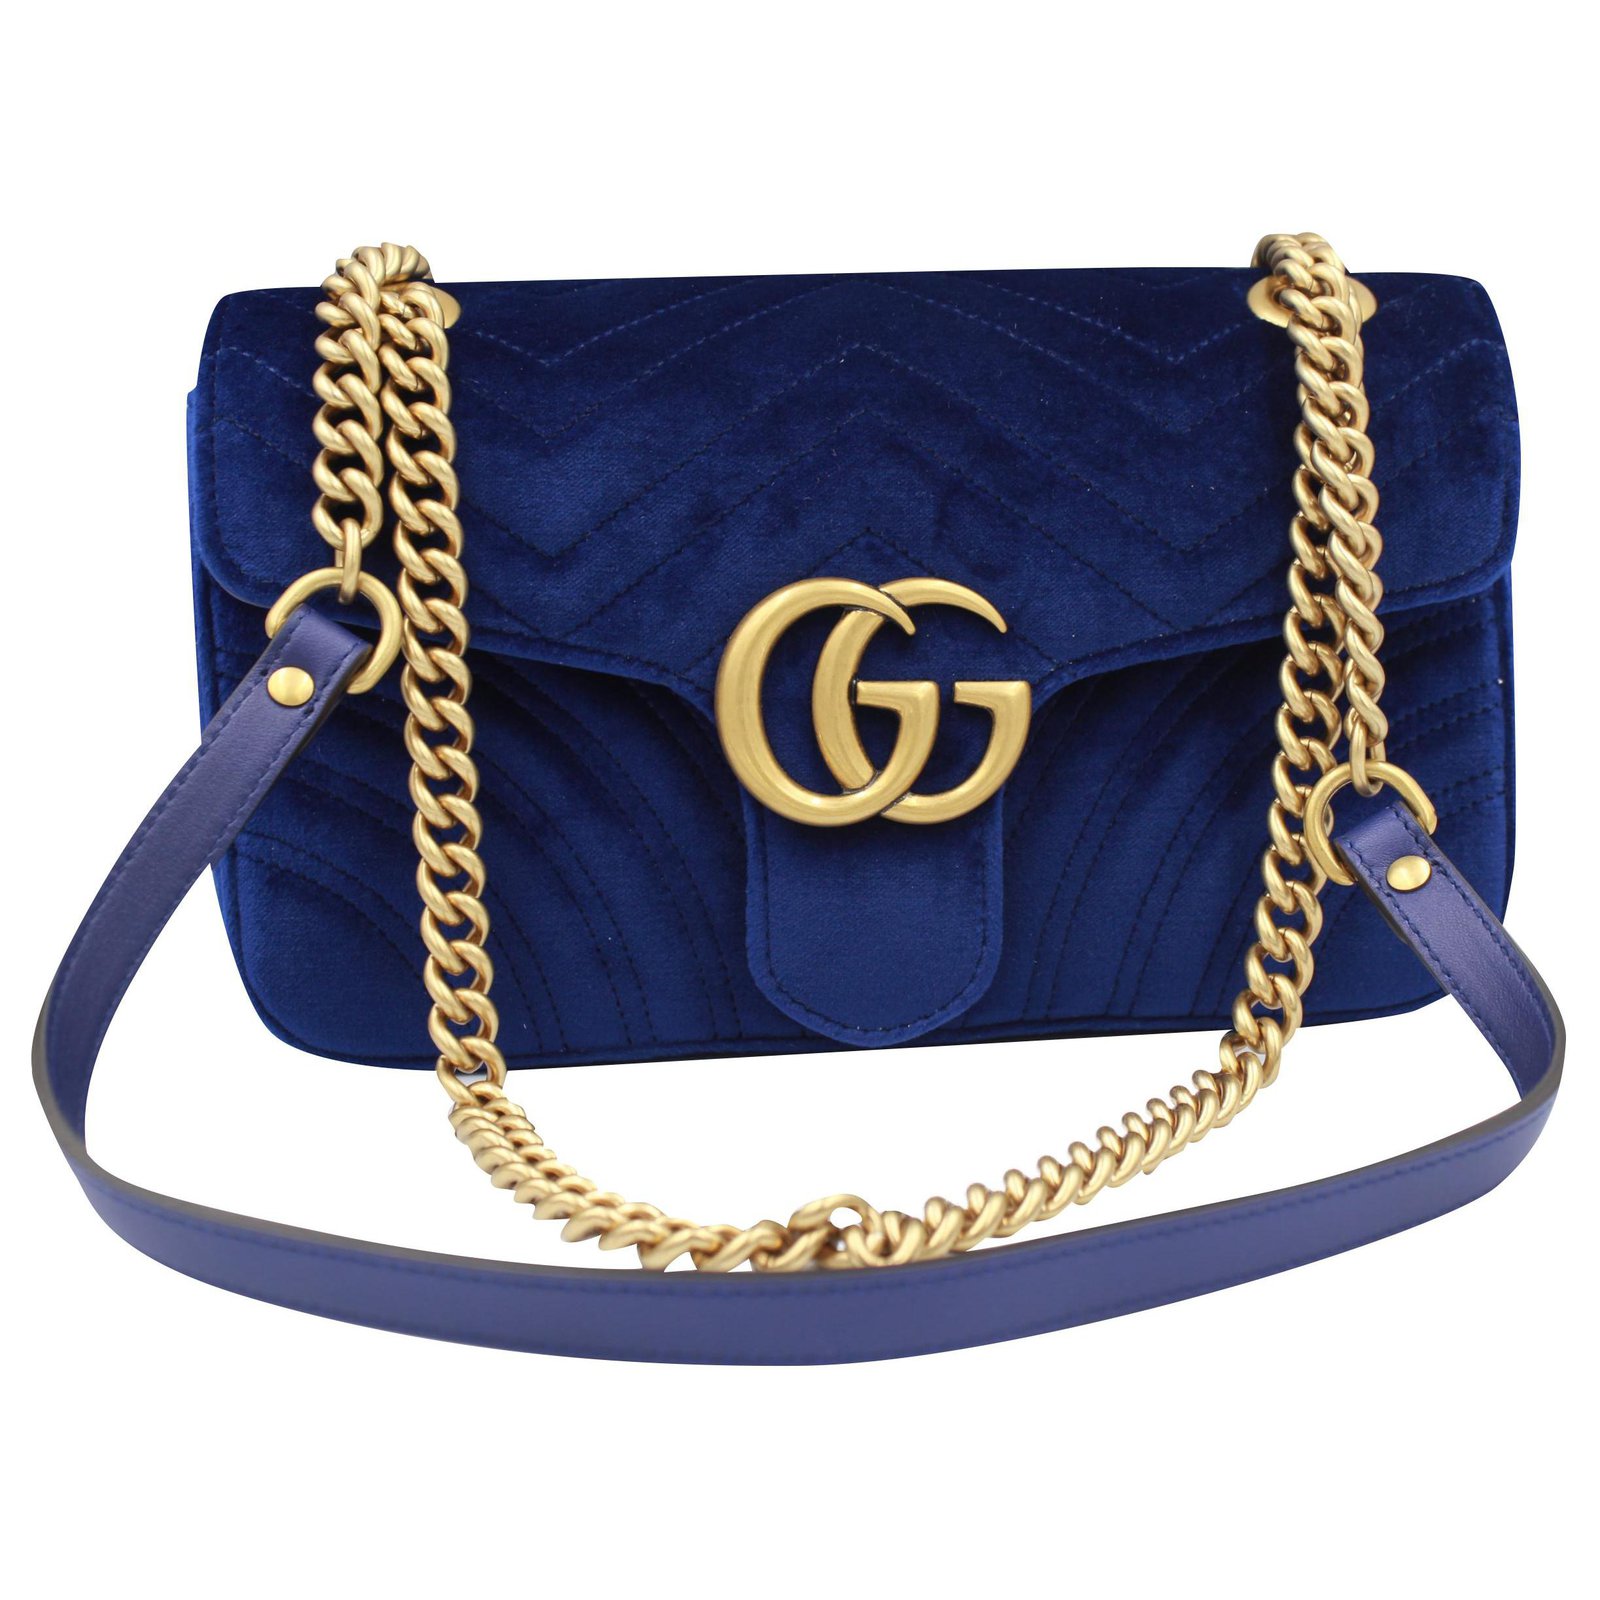 Gucci Gucci Marmont GG handbag in dark 